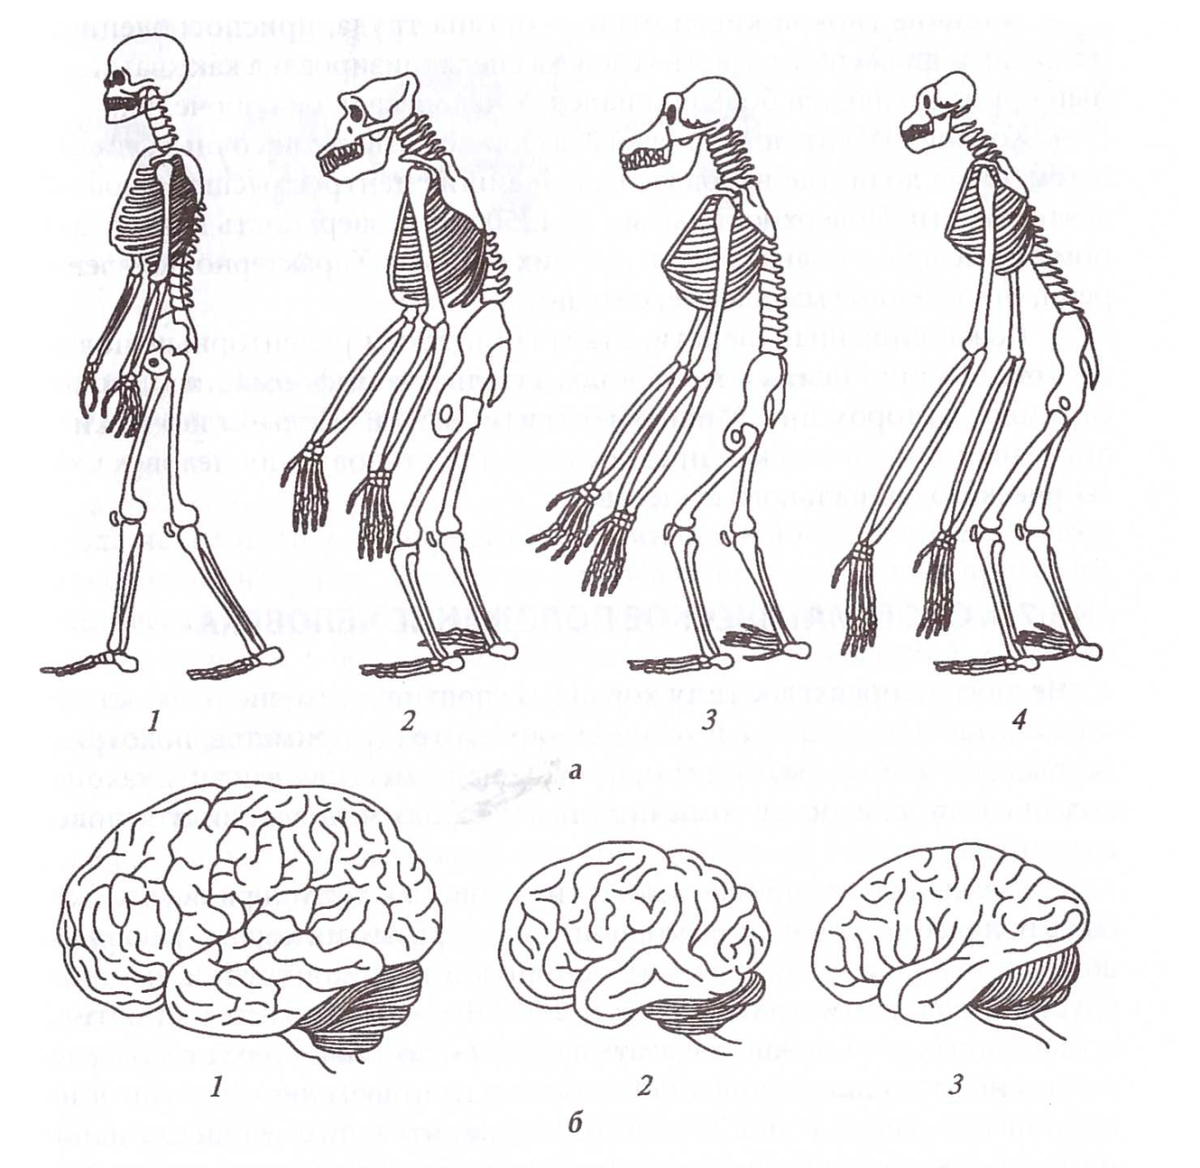 Шимпанзе отличается от человека. Сравнение скелета человека и человекообразной обезьяны. Строение мозга человекообразной обезьяны. Строение скелета человека и человекообразных обезьян. Эволюция человекообразных обезьян.